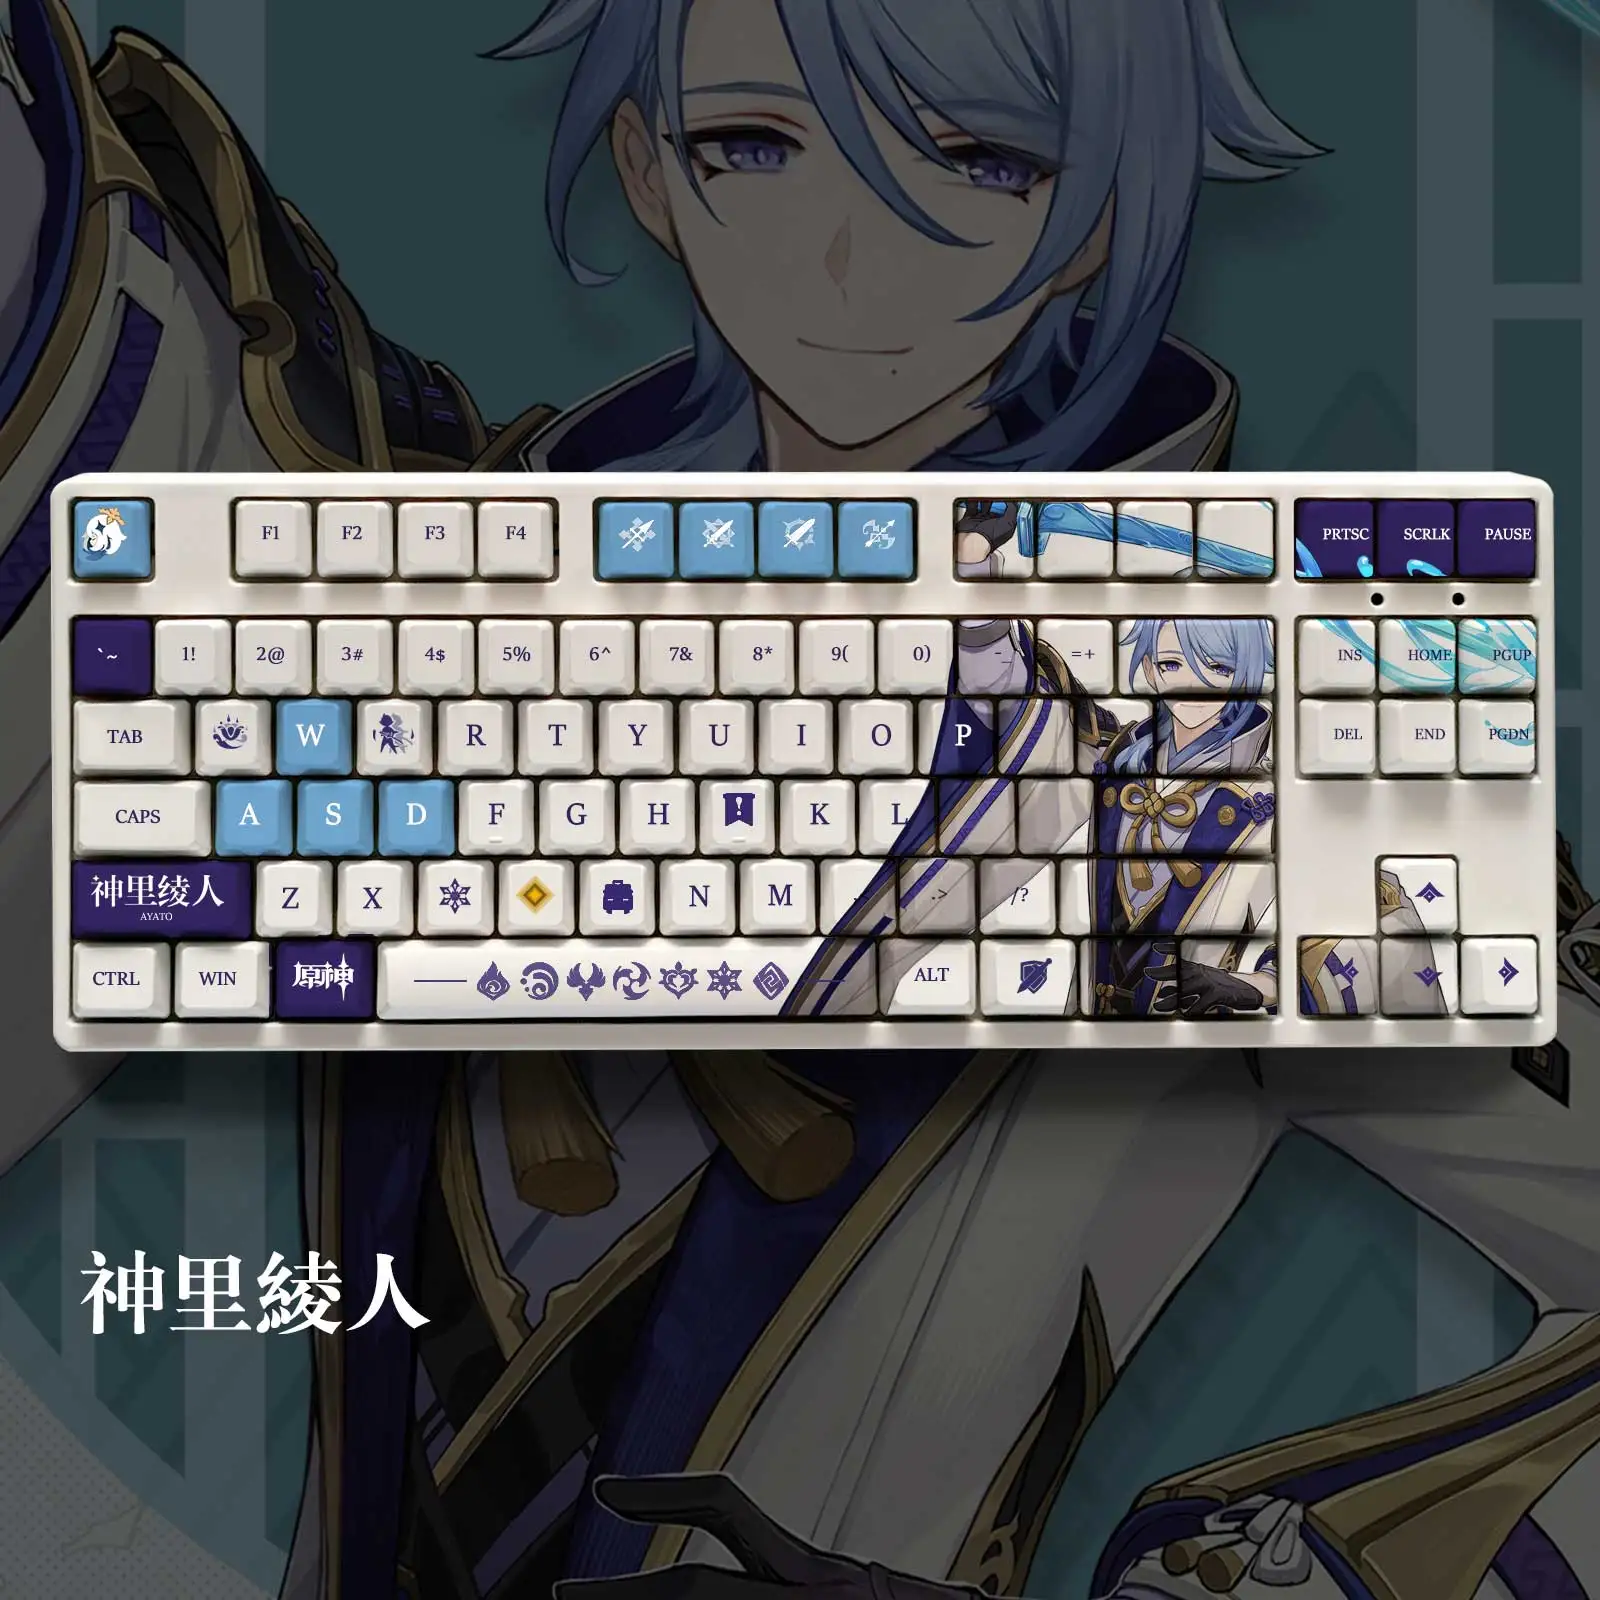 S6ae5c197db384141a57e5838db6d66c4M - Anime Keyboard